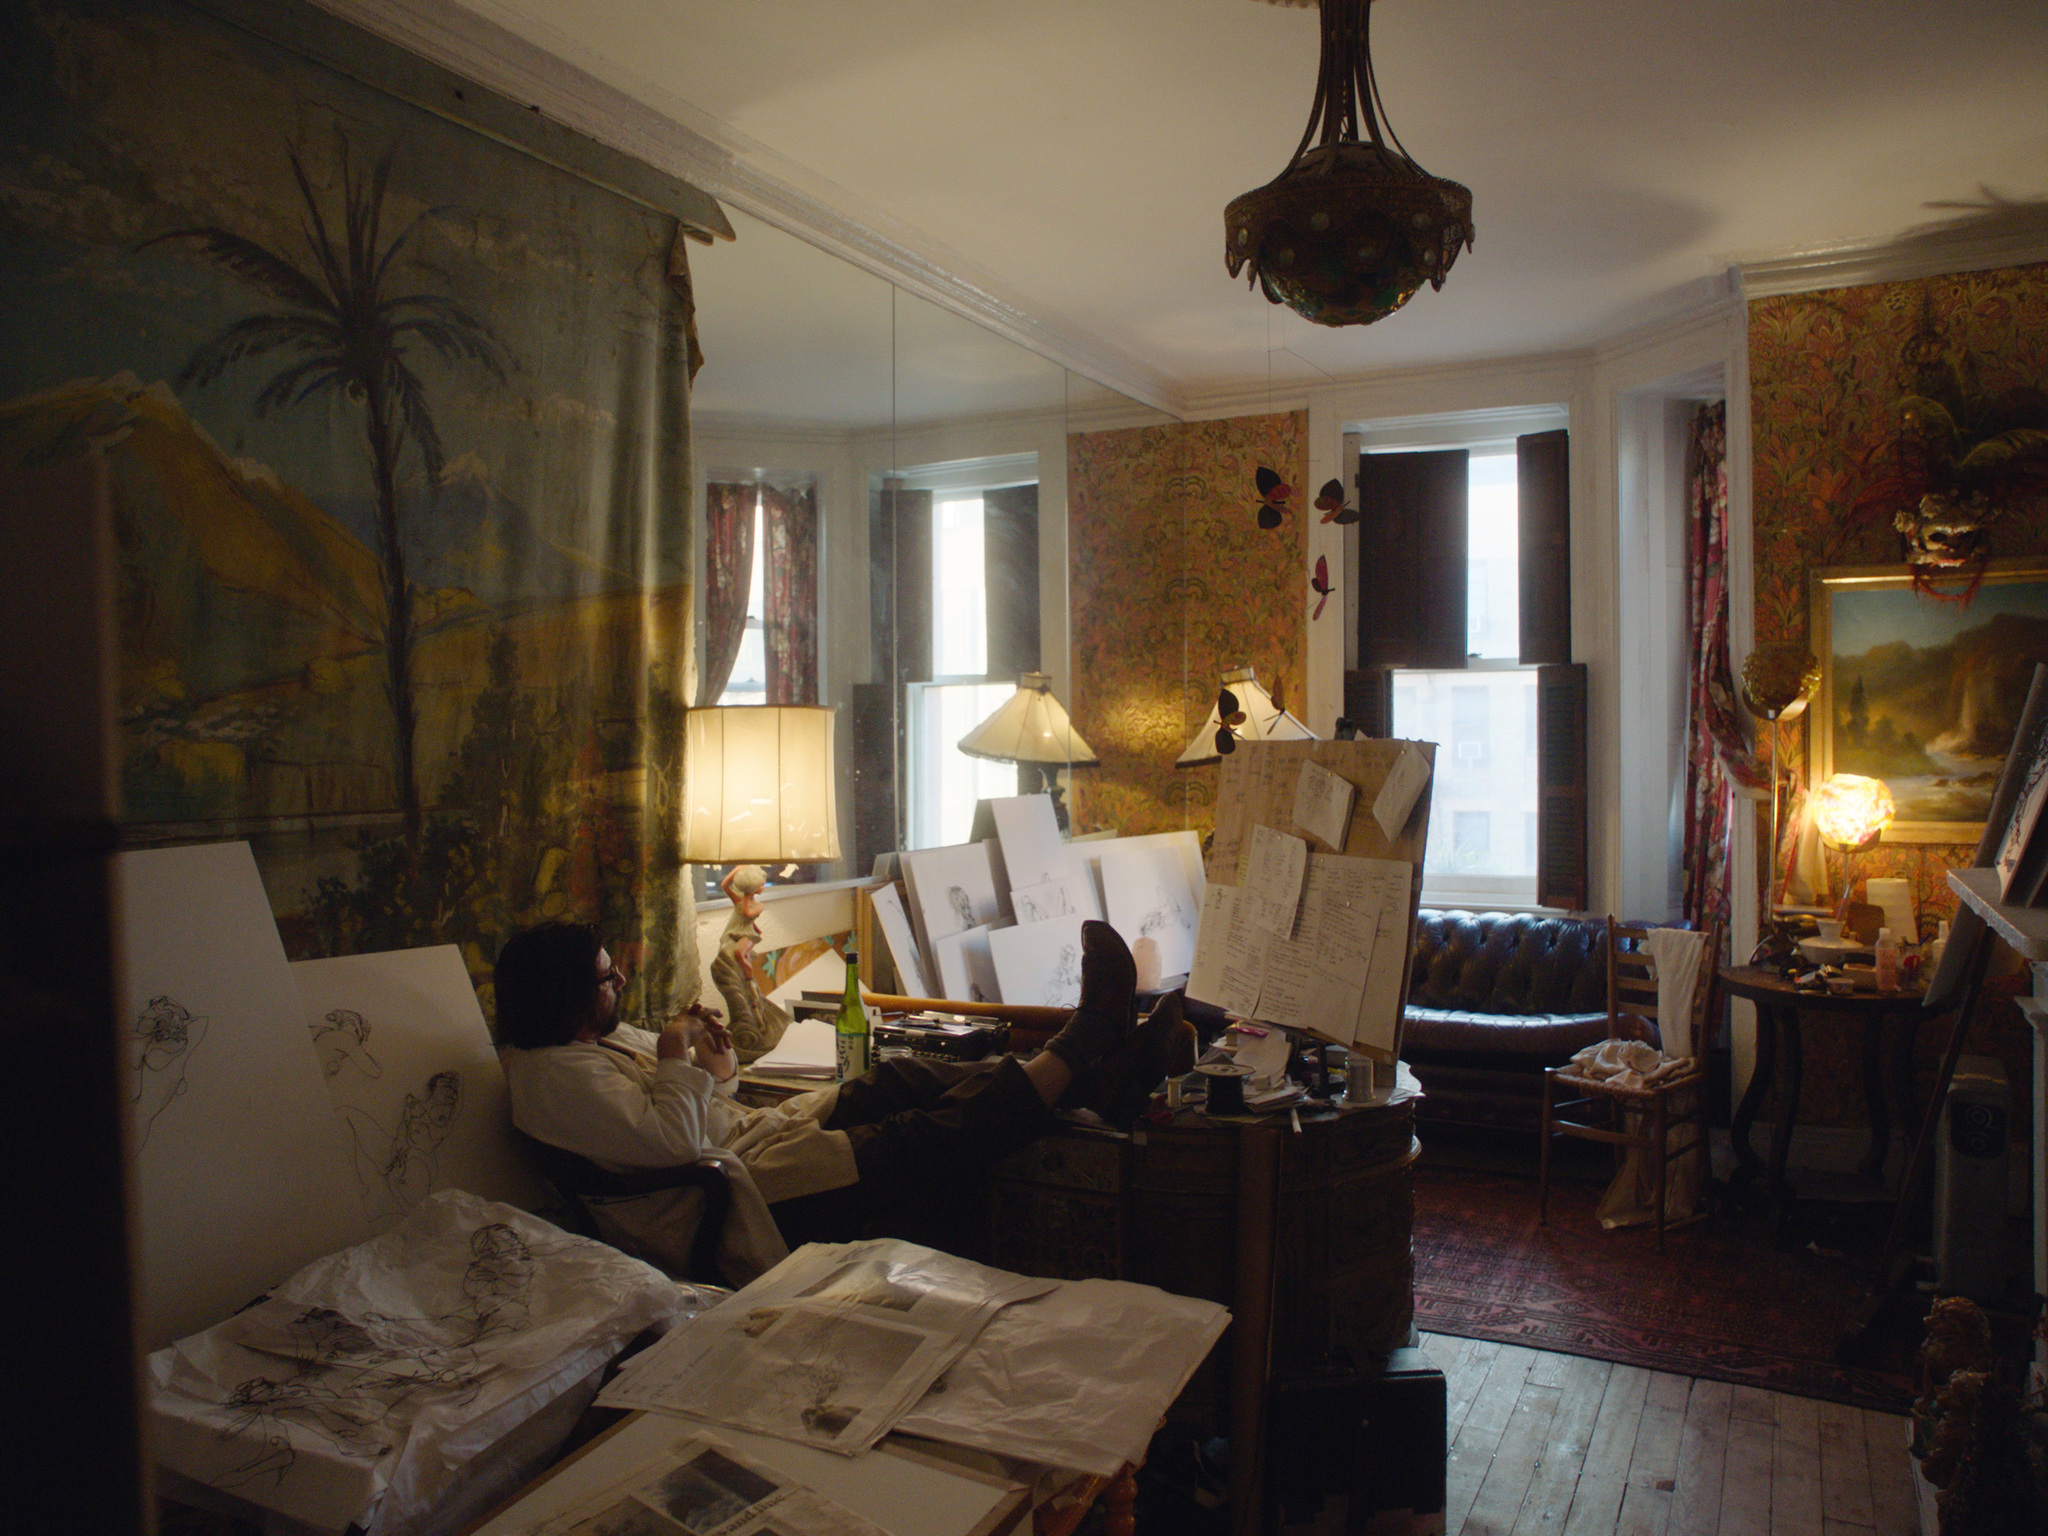 Fotograma de Dentro del Chelsea Hotel que muestra una habitación de un artista bohemio que lleva años allí alojado.